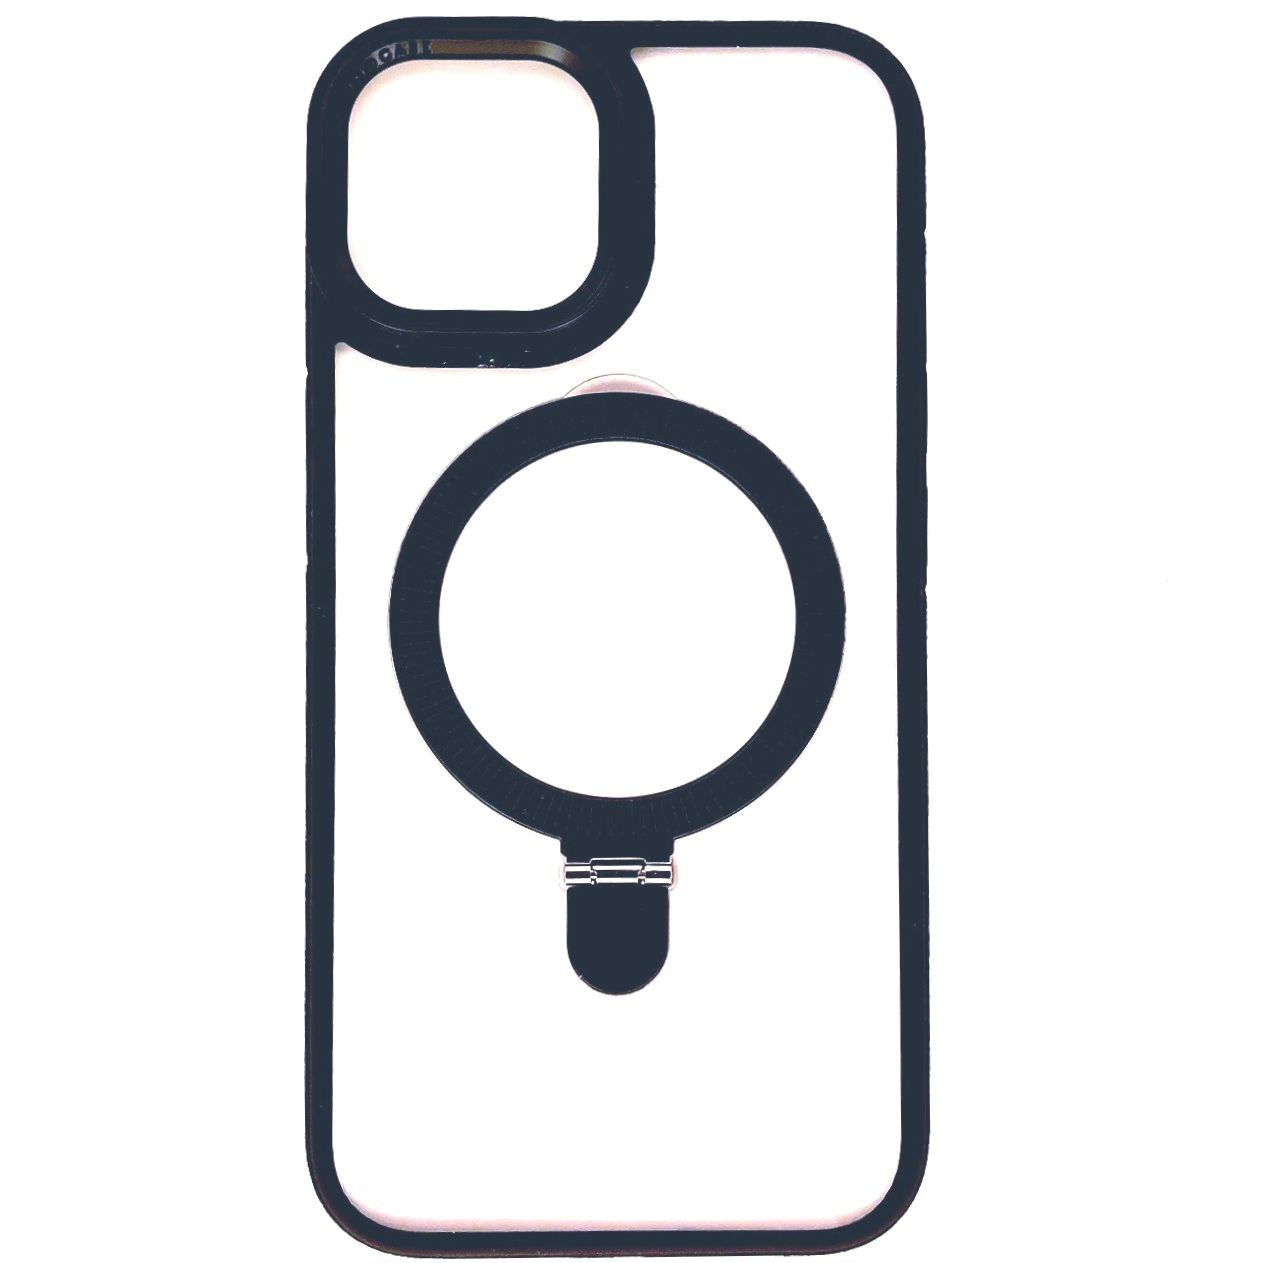  کاور مدل ROOT مناسب برای گوشی موبایل اپل iphone 13pro